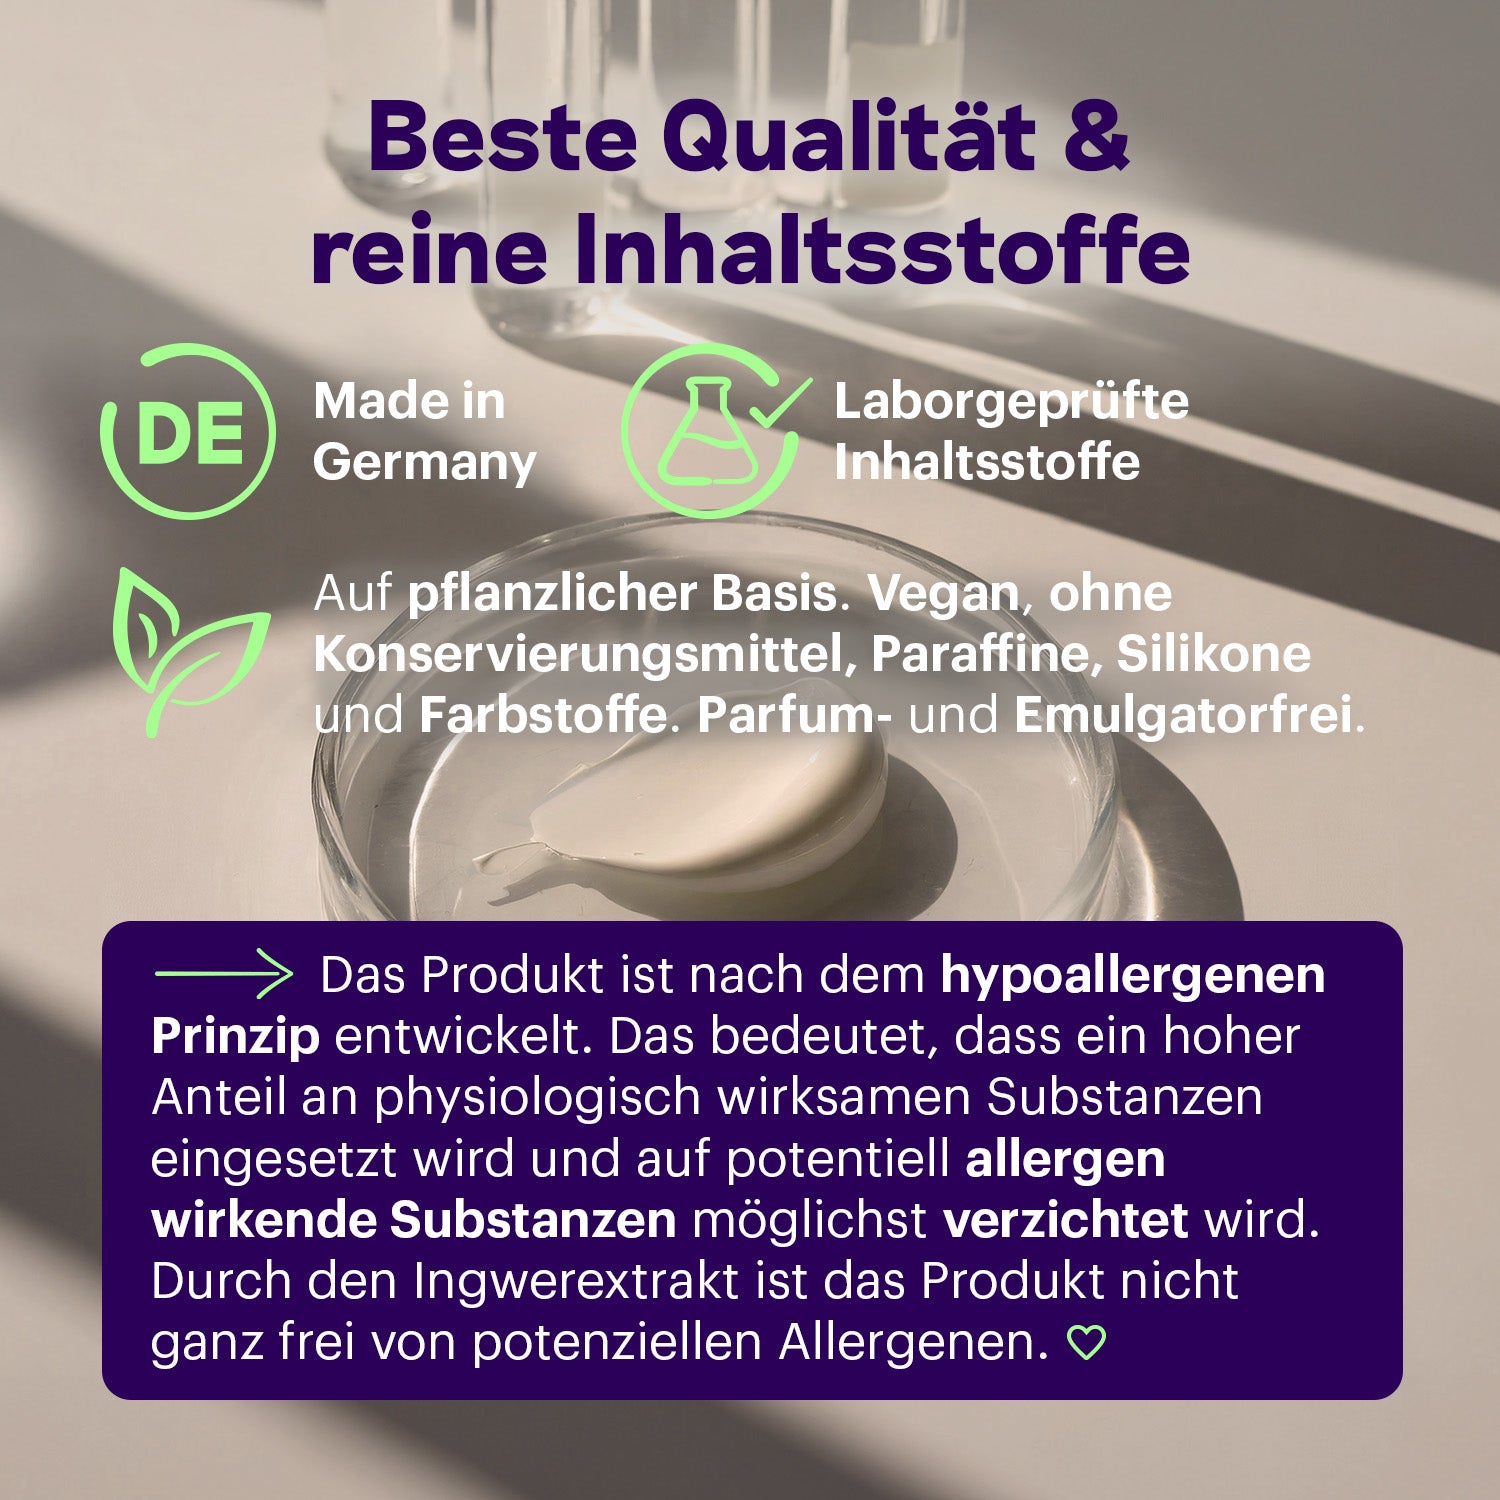 Periodencreme auf pflanzlicher Basis hergestellt in Deutschland.